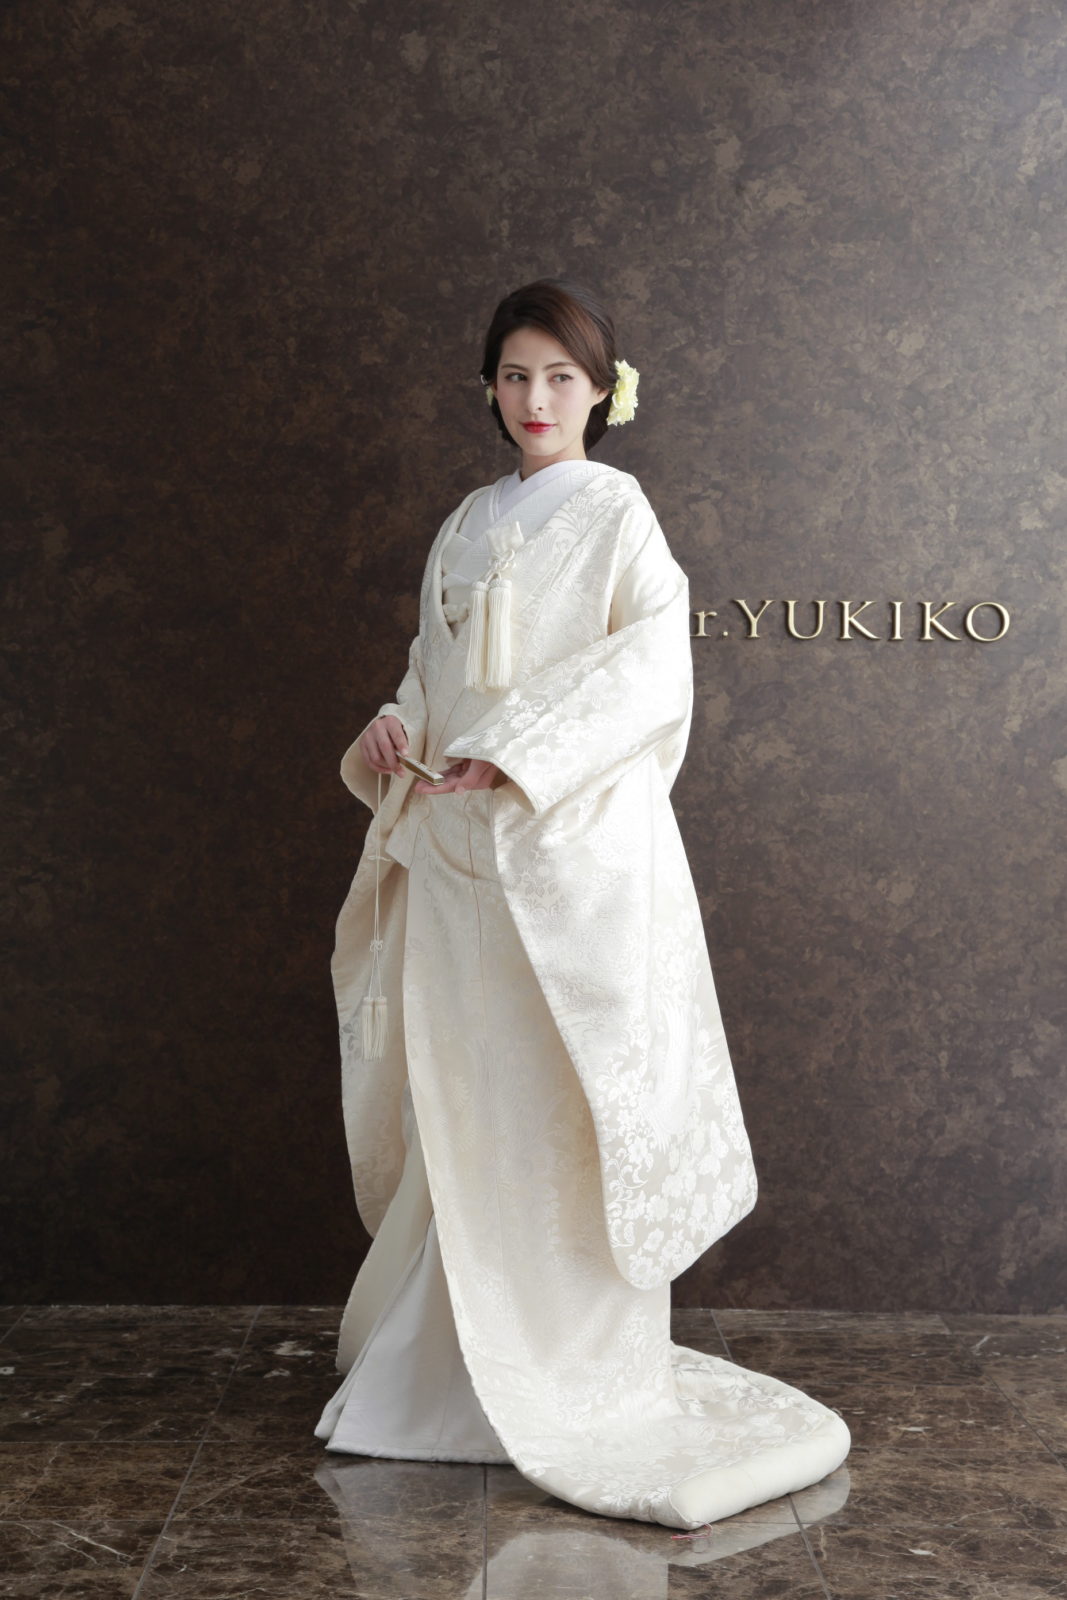 Ar Yukikoの和装 白無垢 色打掛 が人気です Ar Yukiko